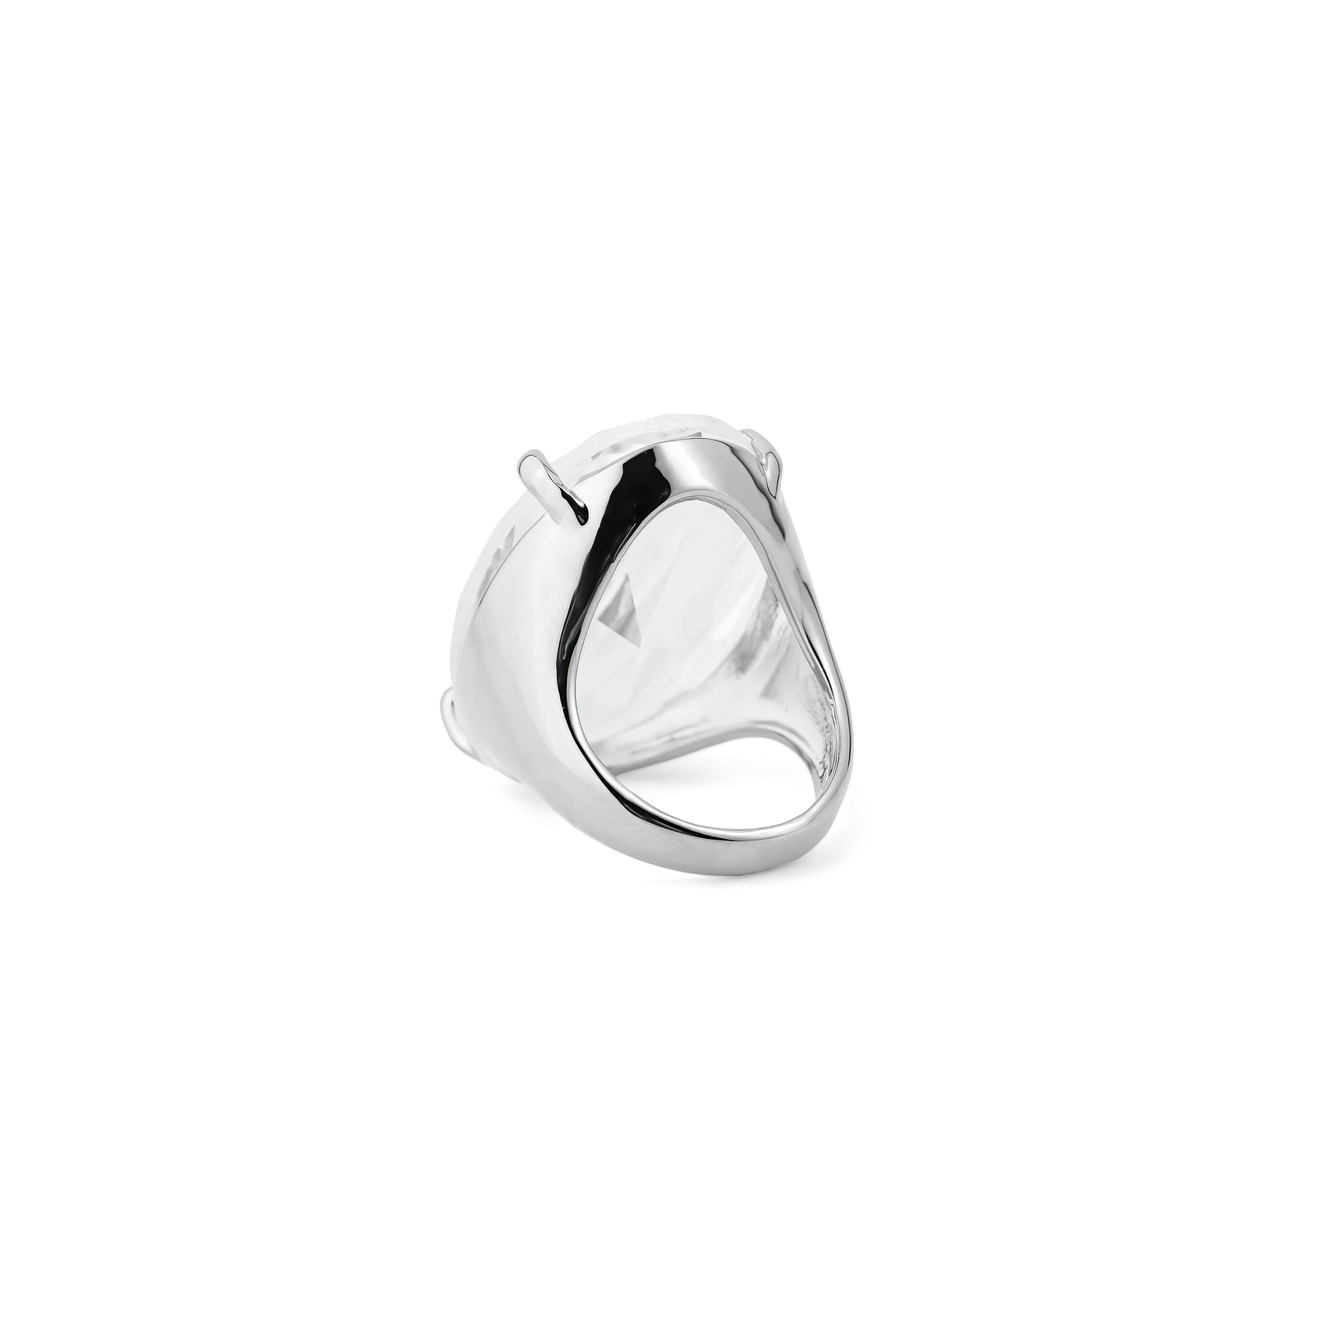 Herald Percy Серебристое кольцо с овальным кристаллом